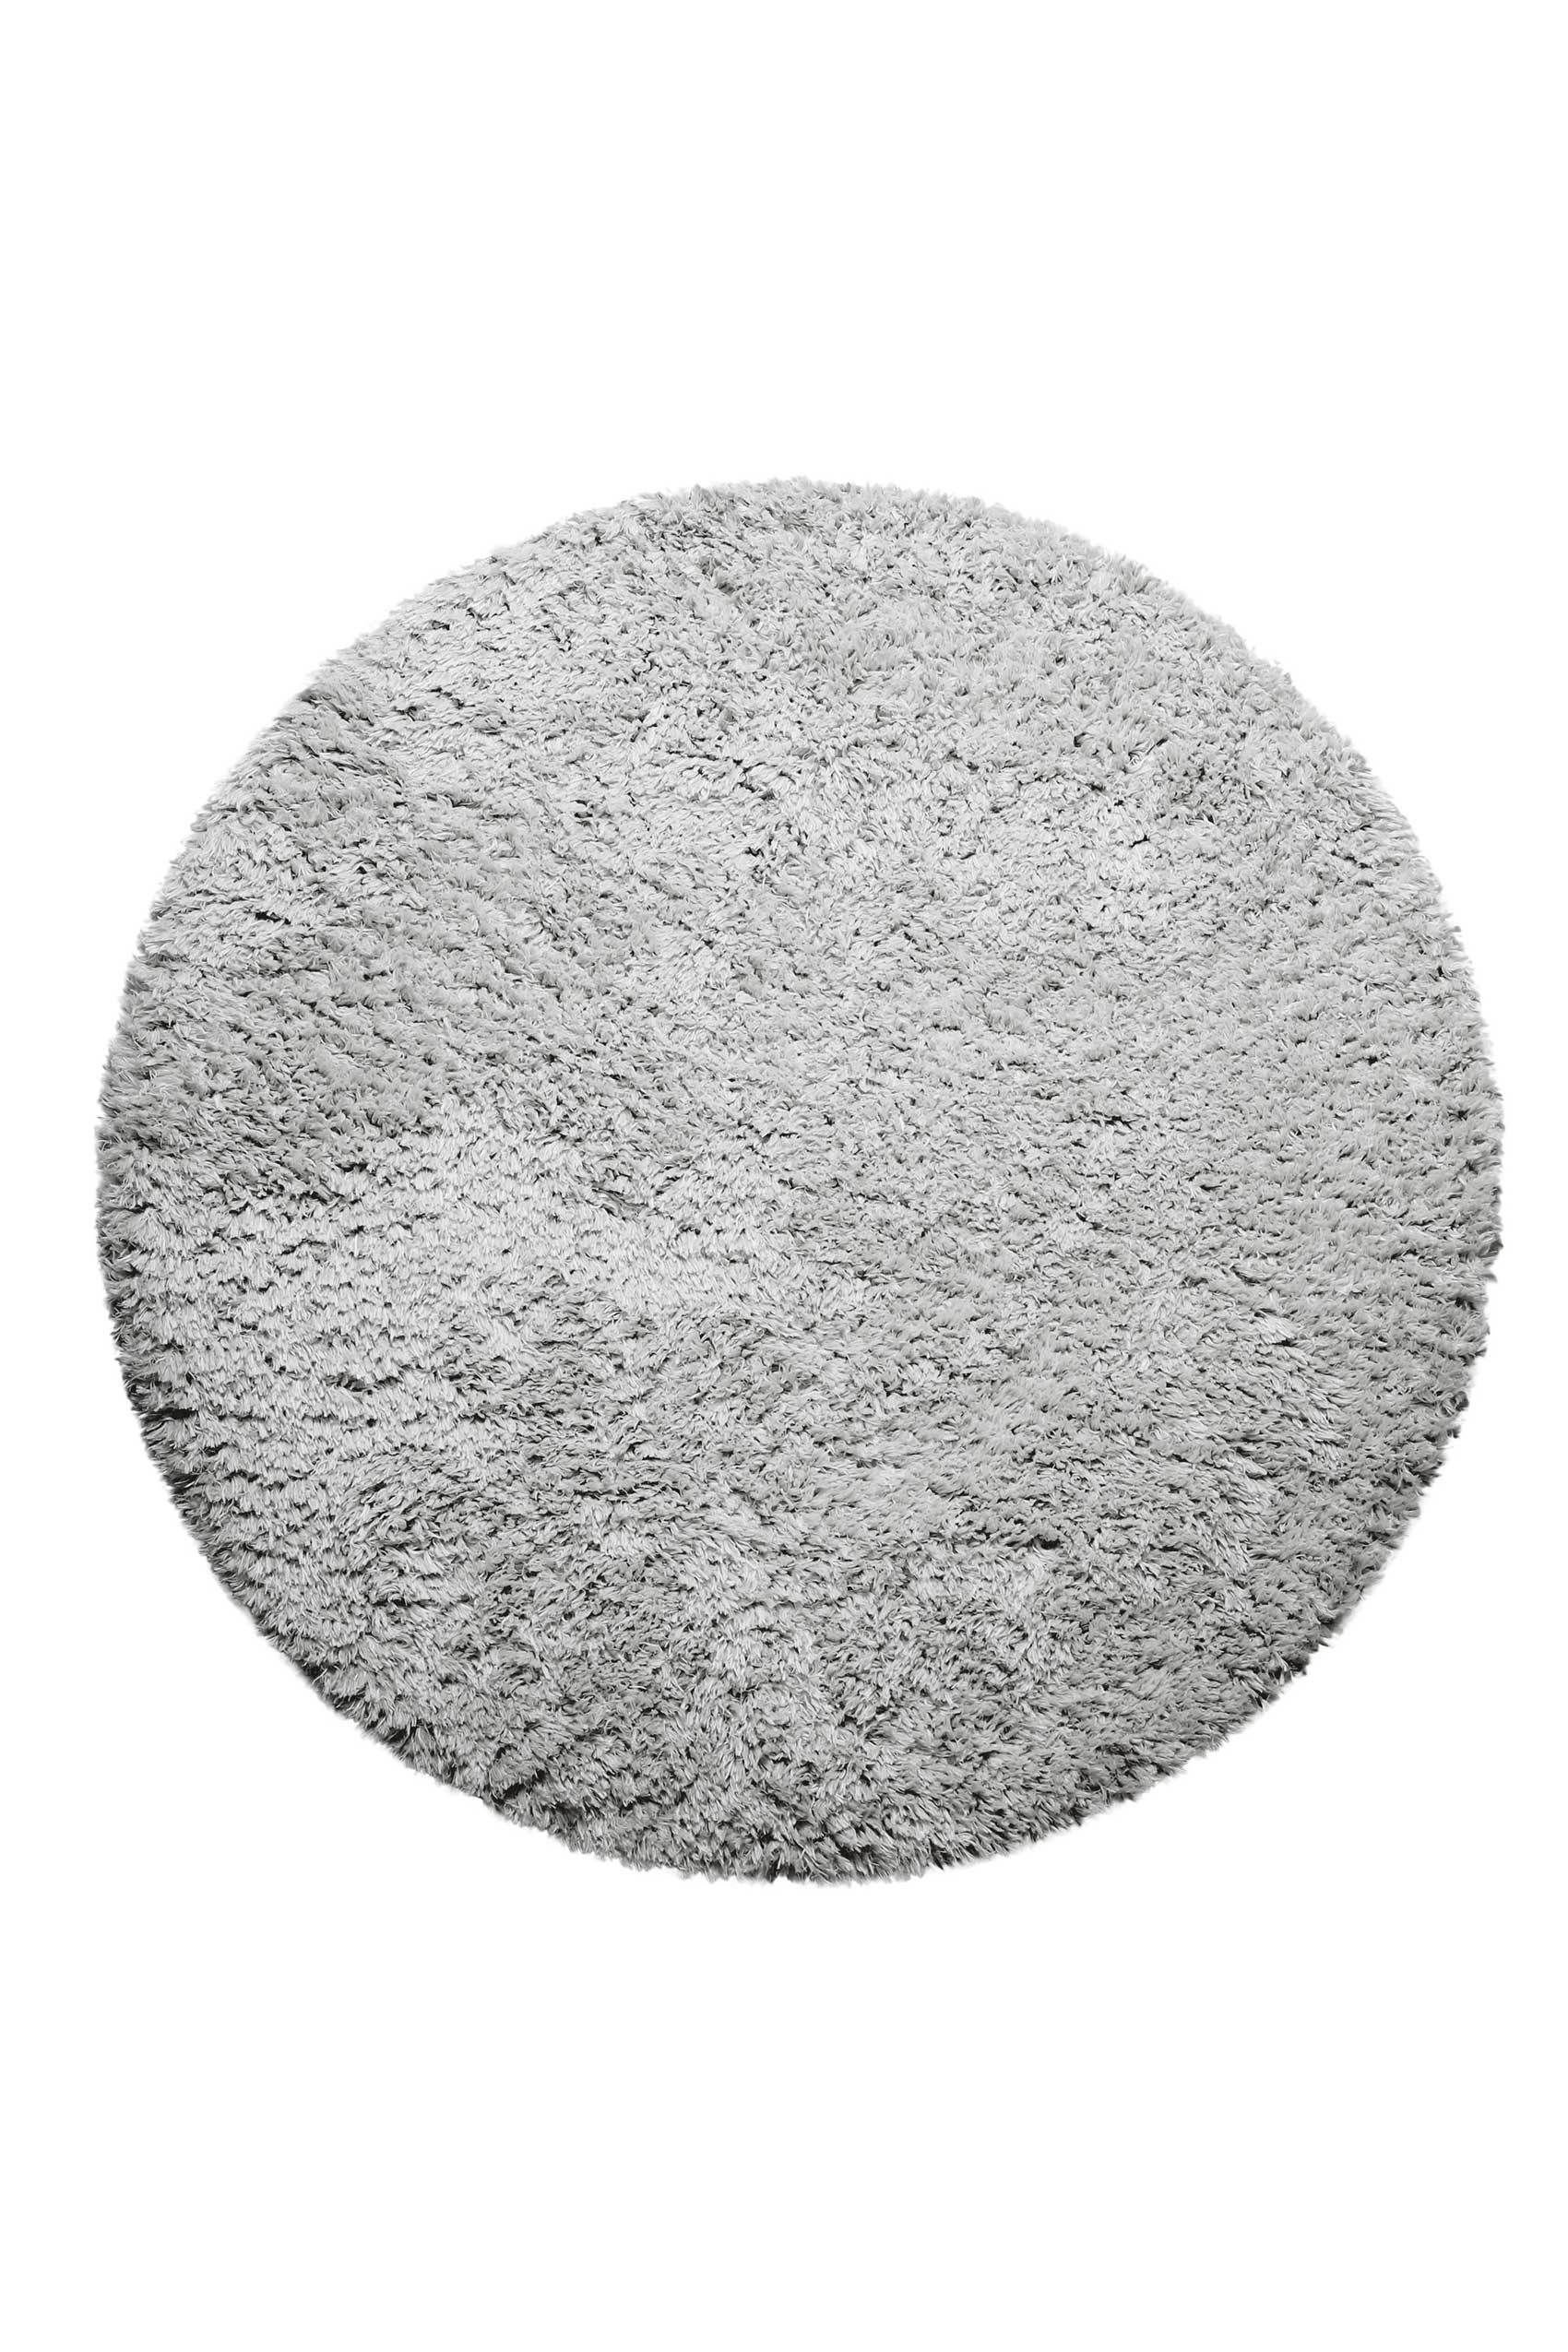 Nachhaltiger Teppich Rund Grau Silber soft & weich » Matteo « Homie Living - Ansicht 1